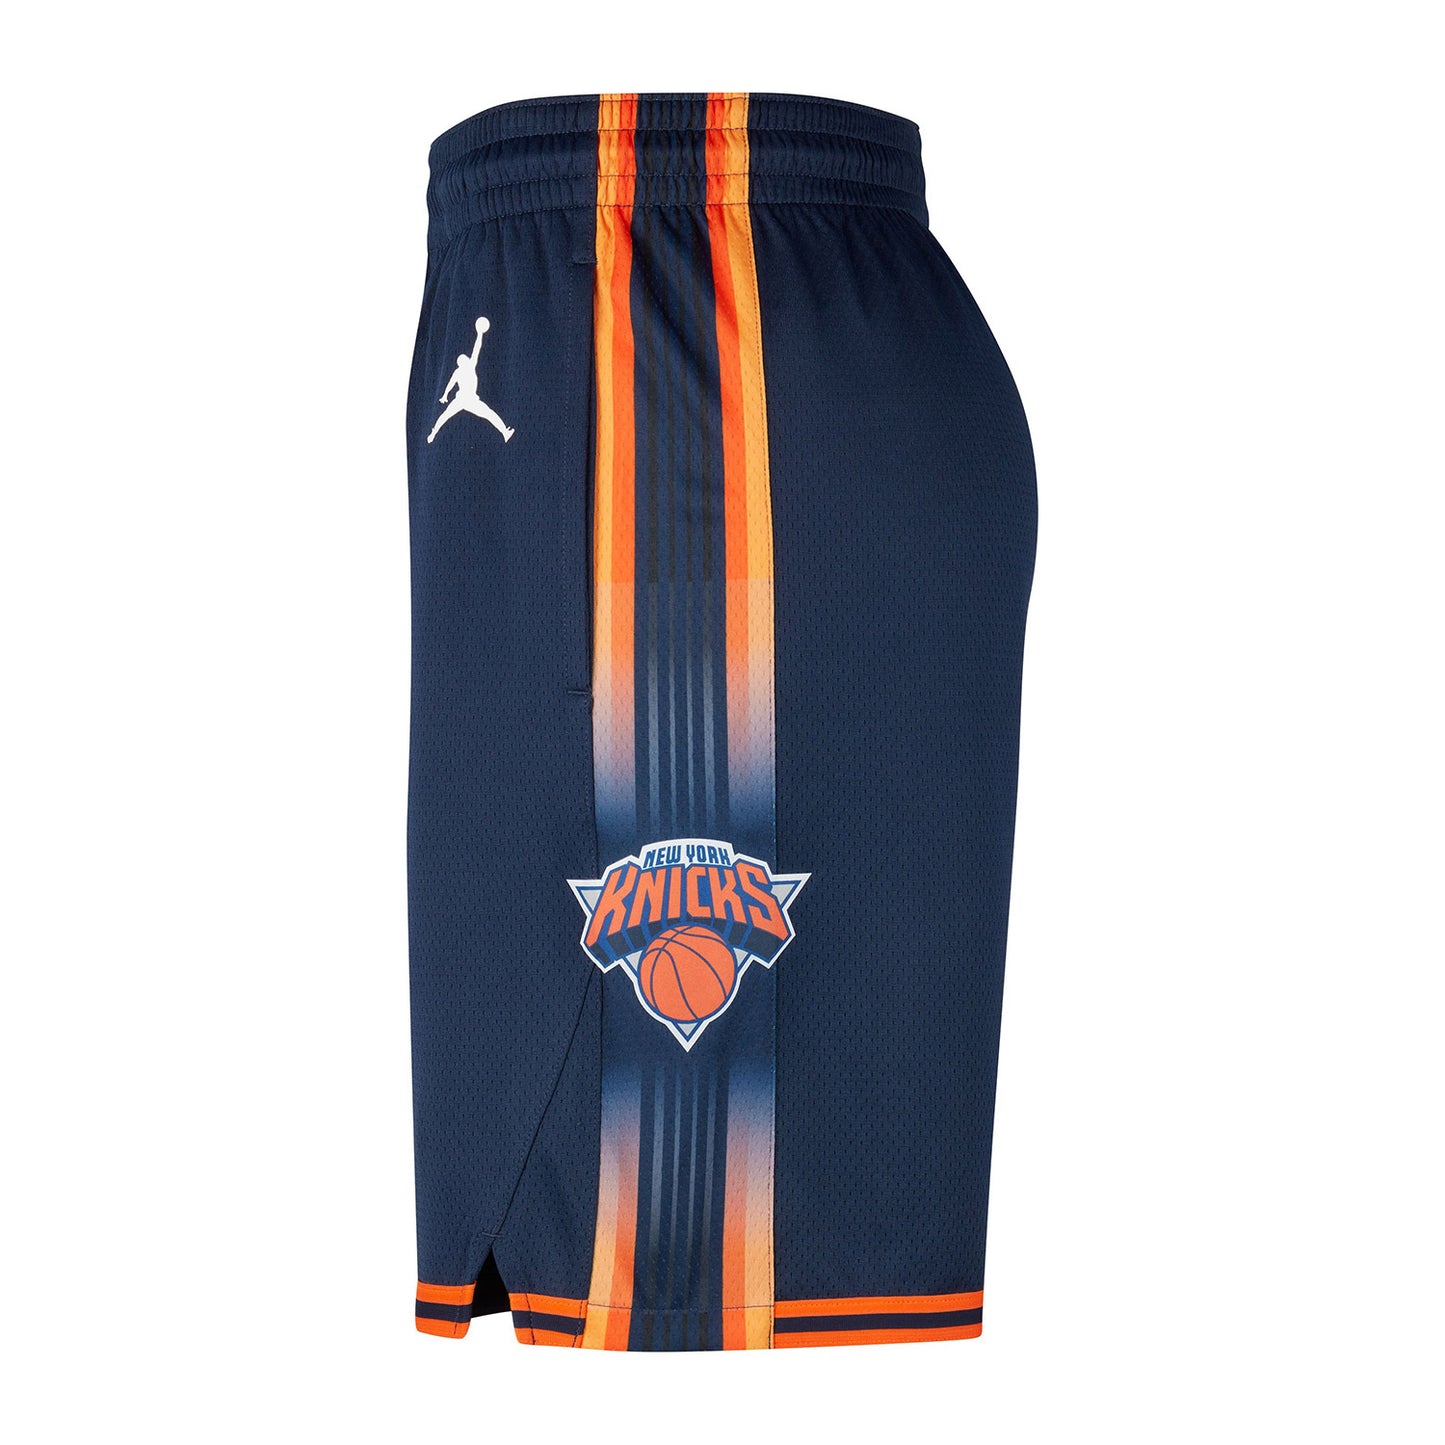 Nike Knicks 22-23 Statement Dri-fit Swingman Shorts In Blue & Orange - Left Side View